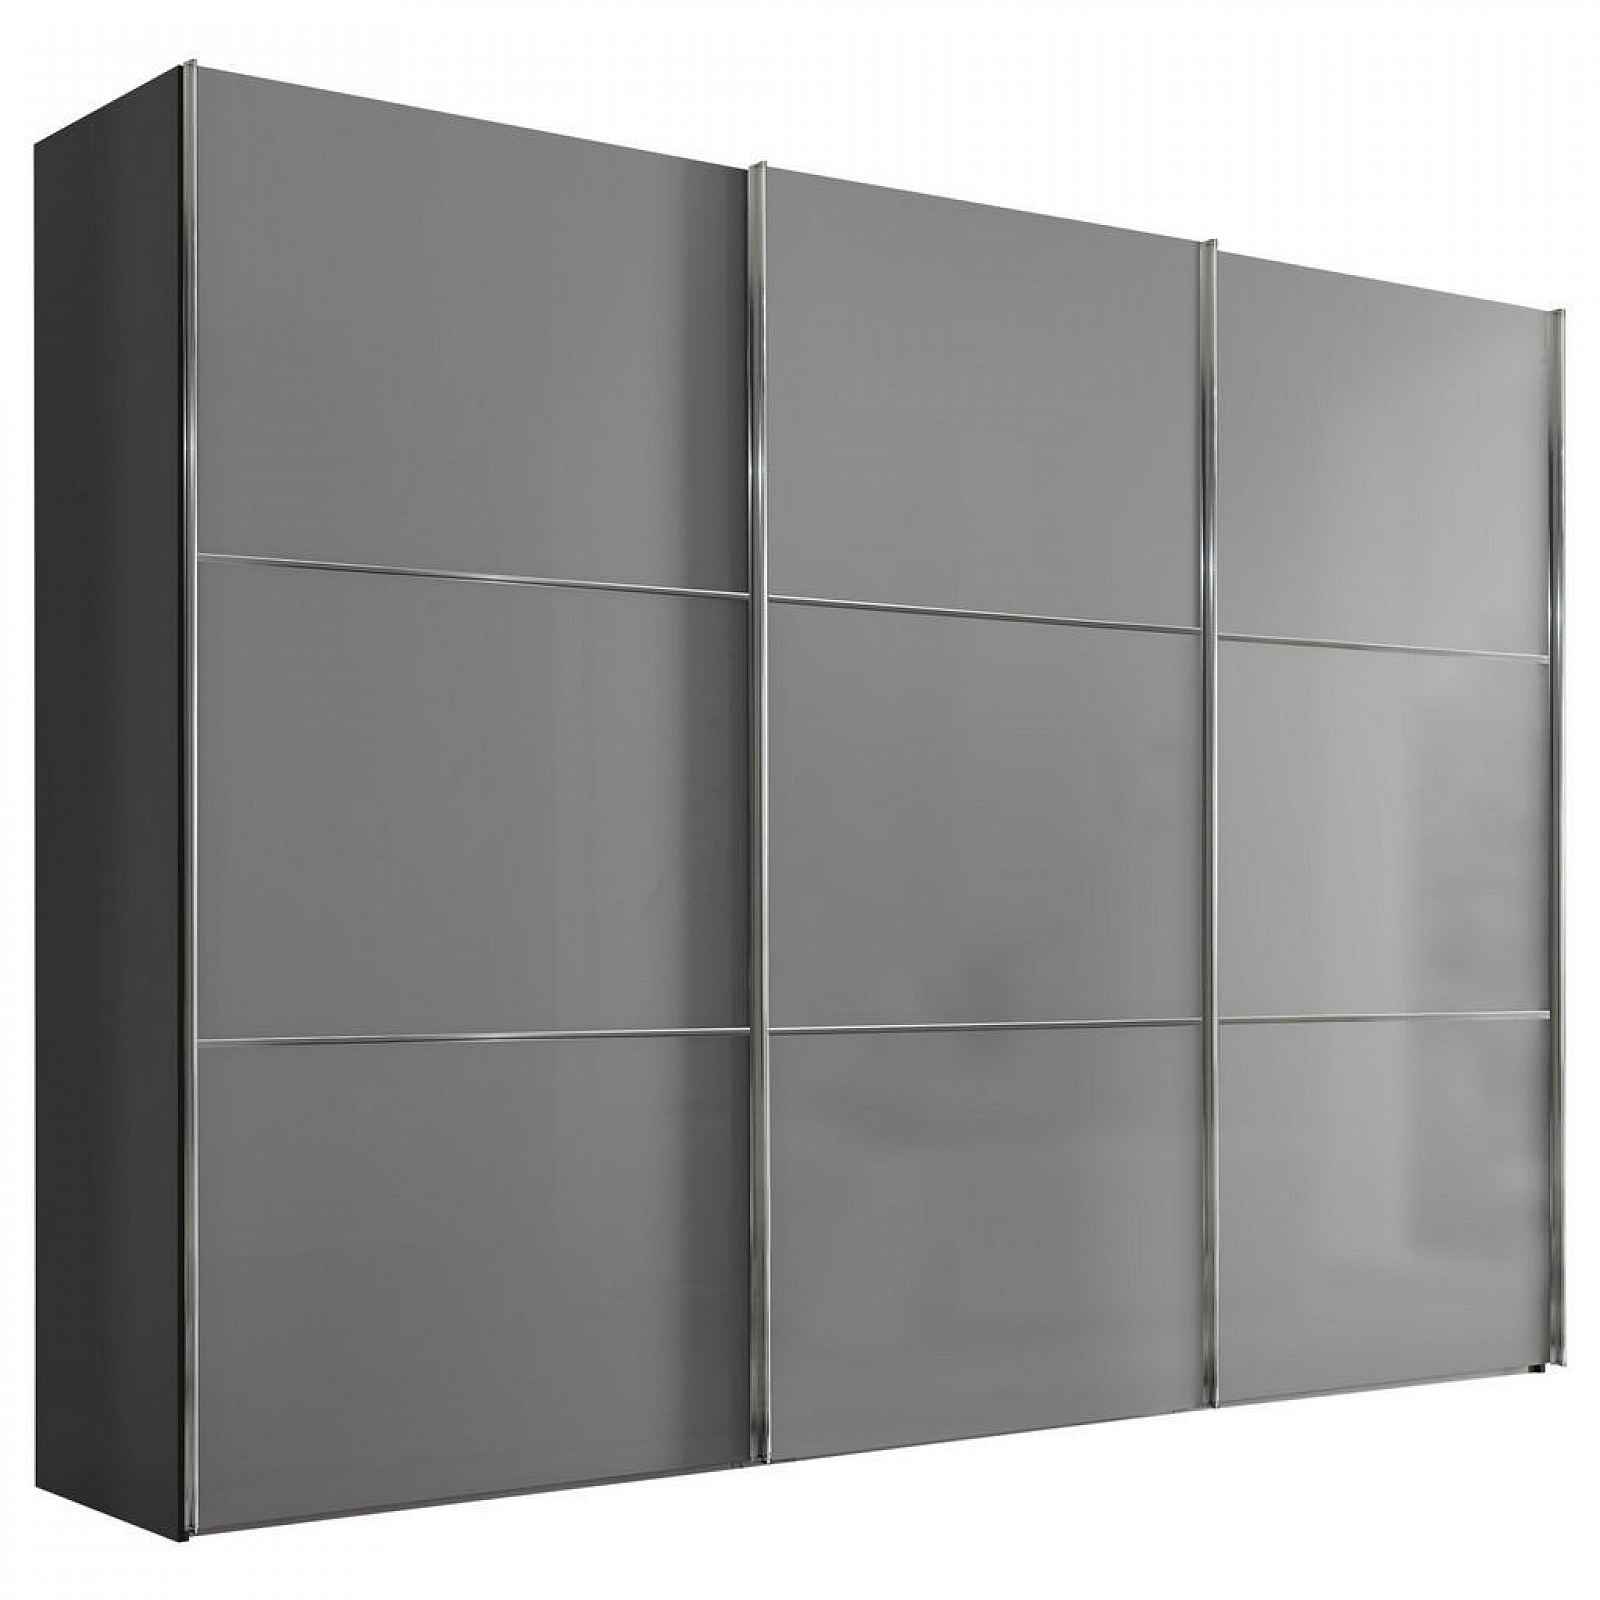 Moderano SCHWEBETÜRENSCHRANK Glasfront, světle šedá, tmavě šedá, 249/222/68 cm - Šatní skříně - 000531006079